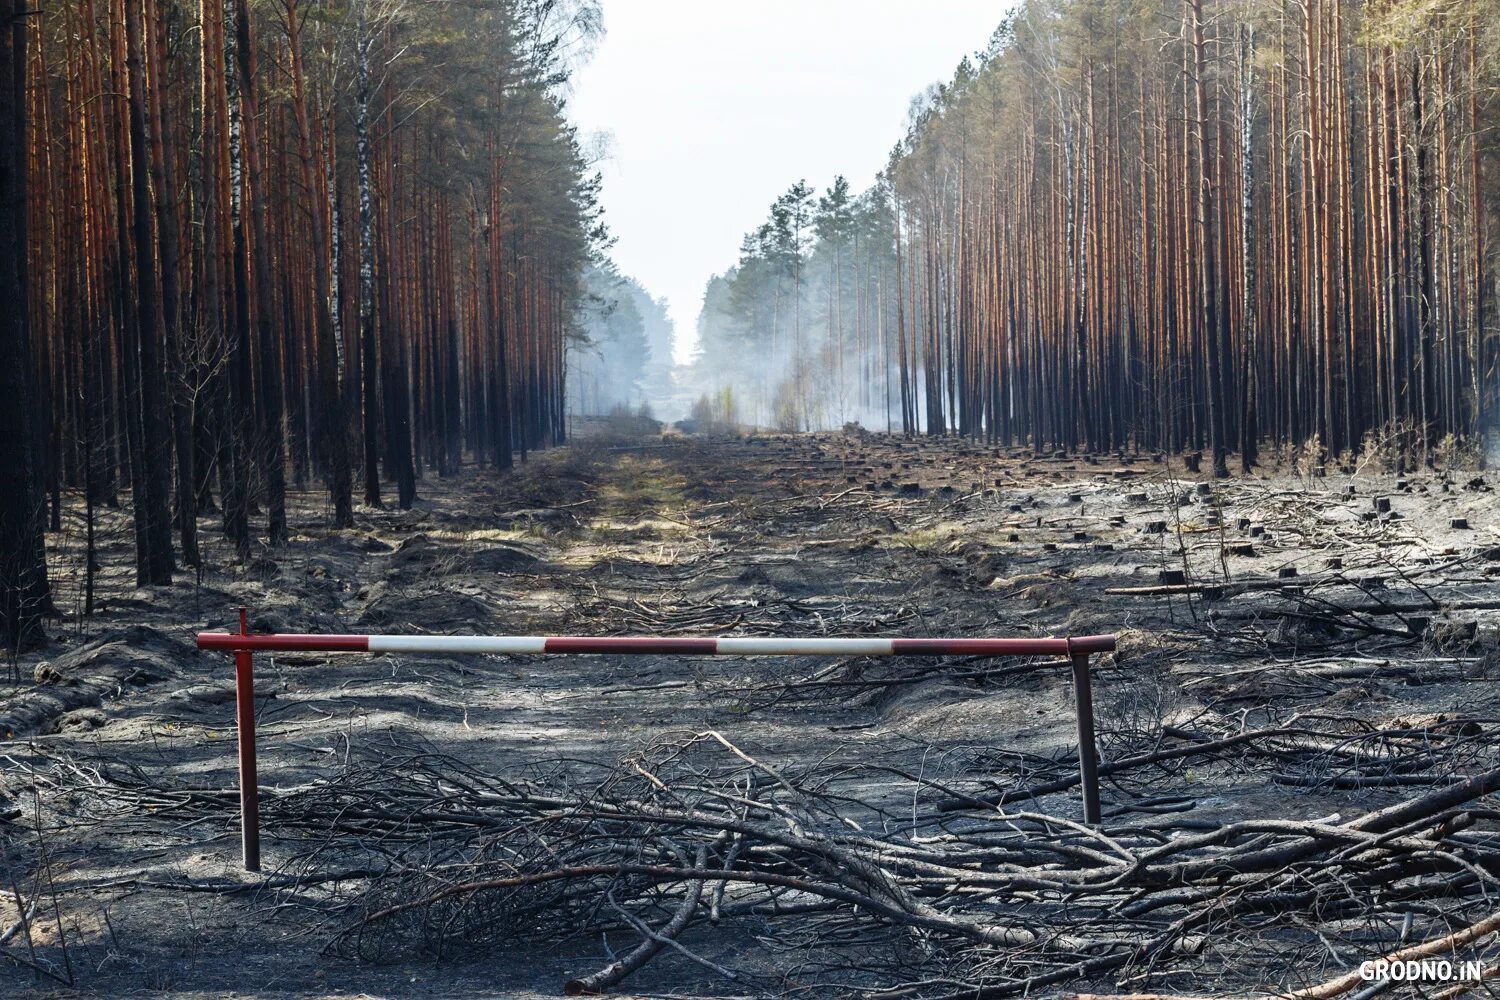 Последствия лесных пожаров. Леса после пожара. Лес после низового пожара. Последствия пожара в лесу. Почему после пожаров